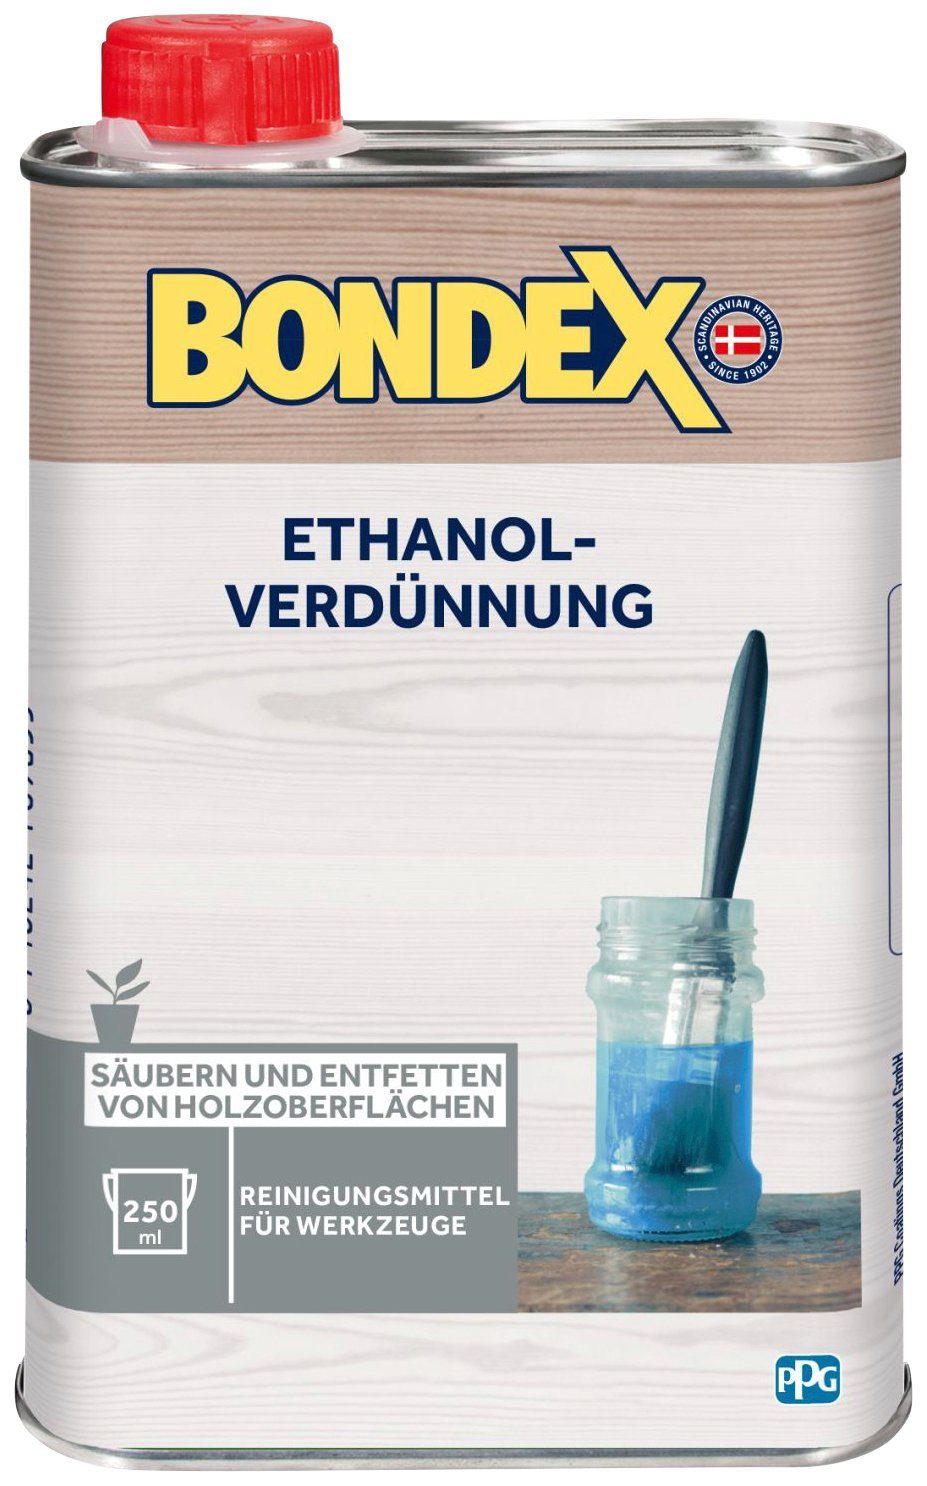 Bondex 0,25 Terpentinersatz ETHANOL-VERDÜNNUNG, l